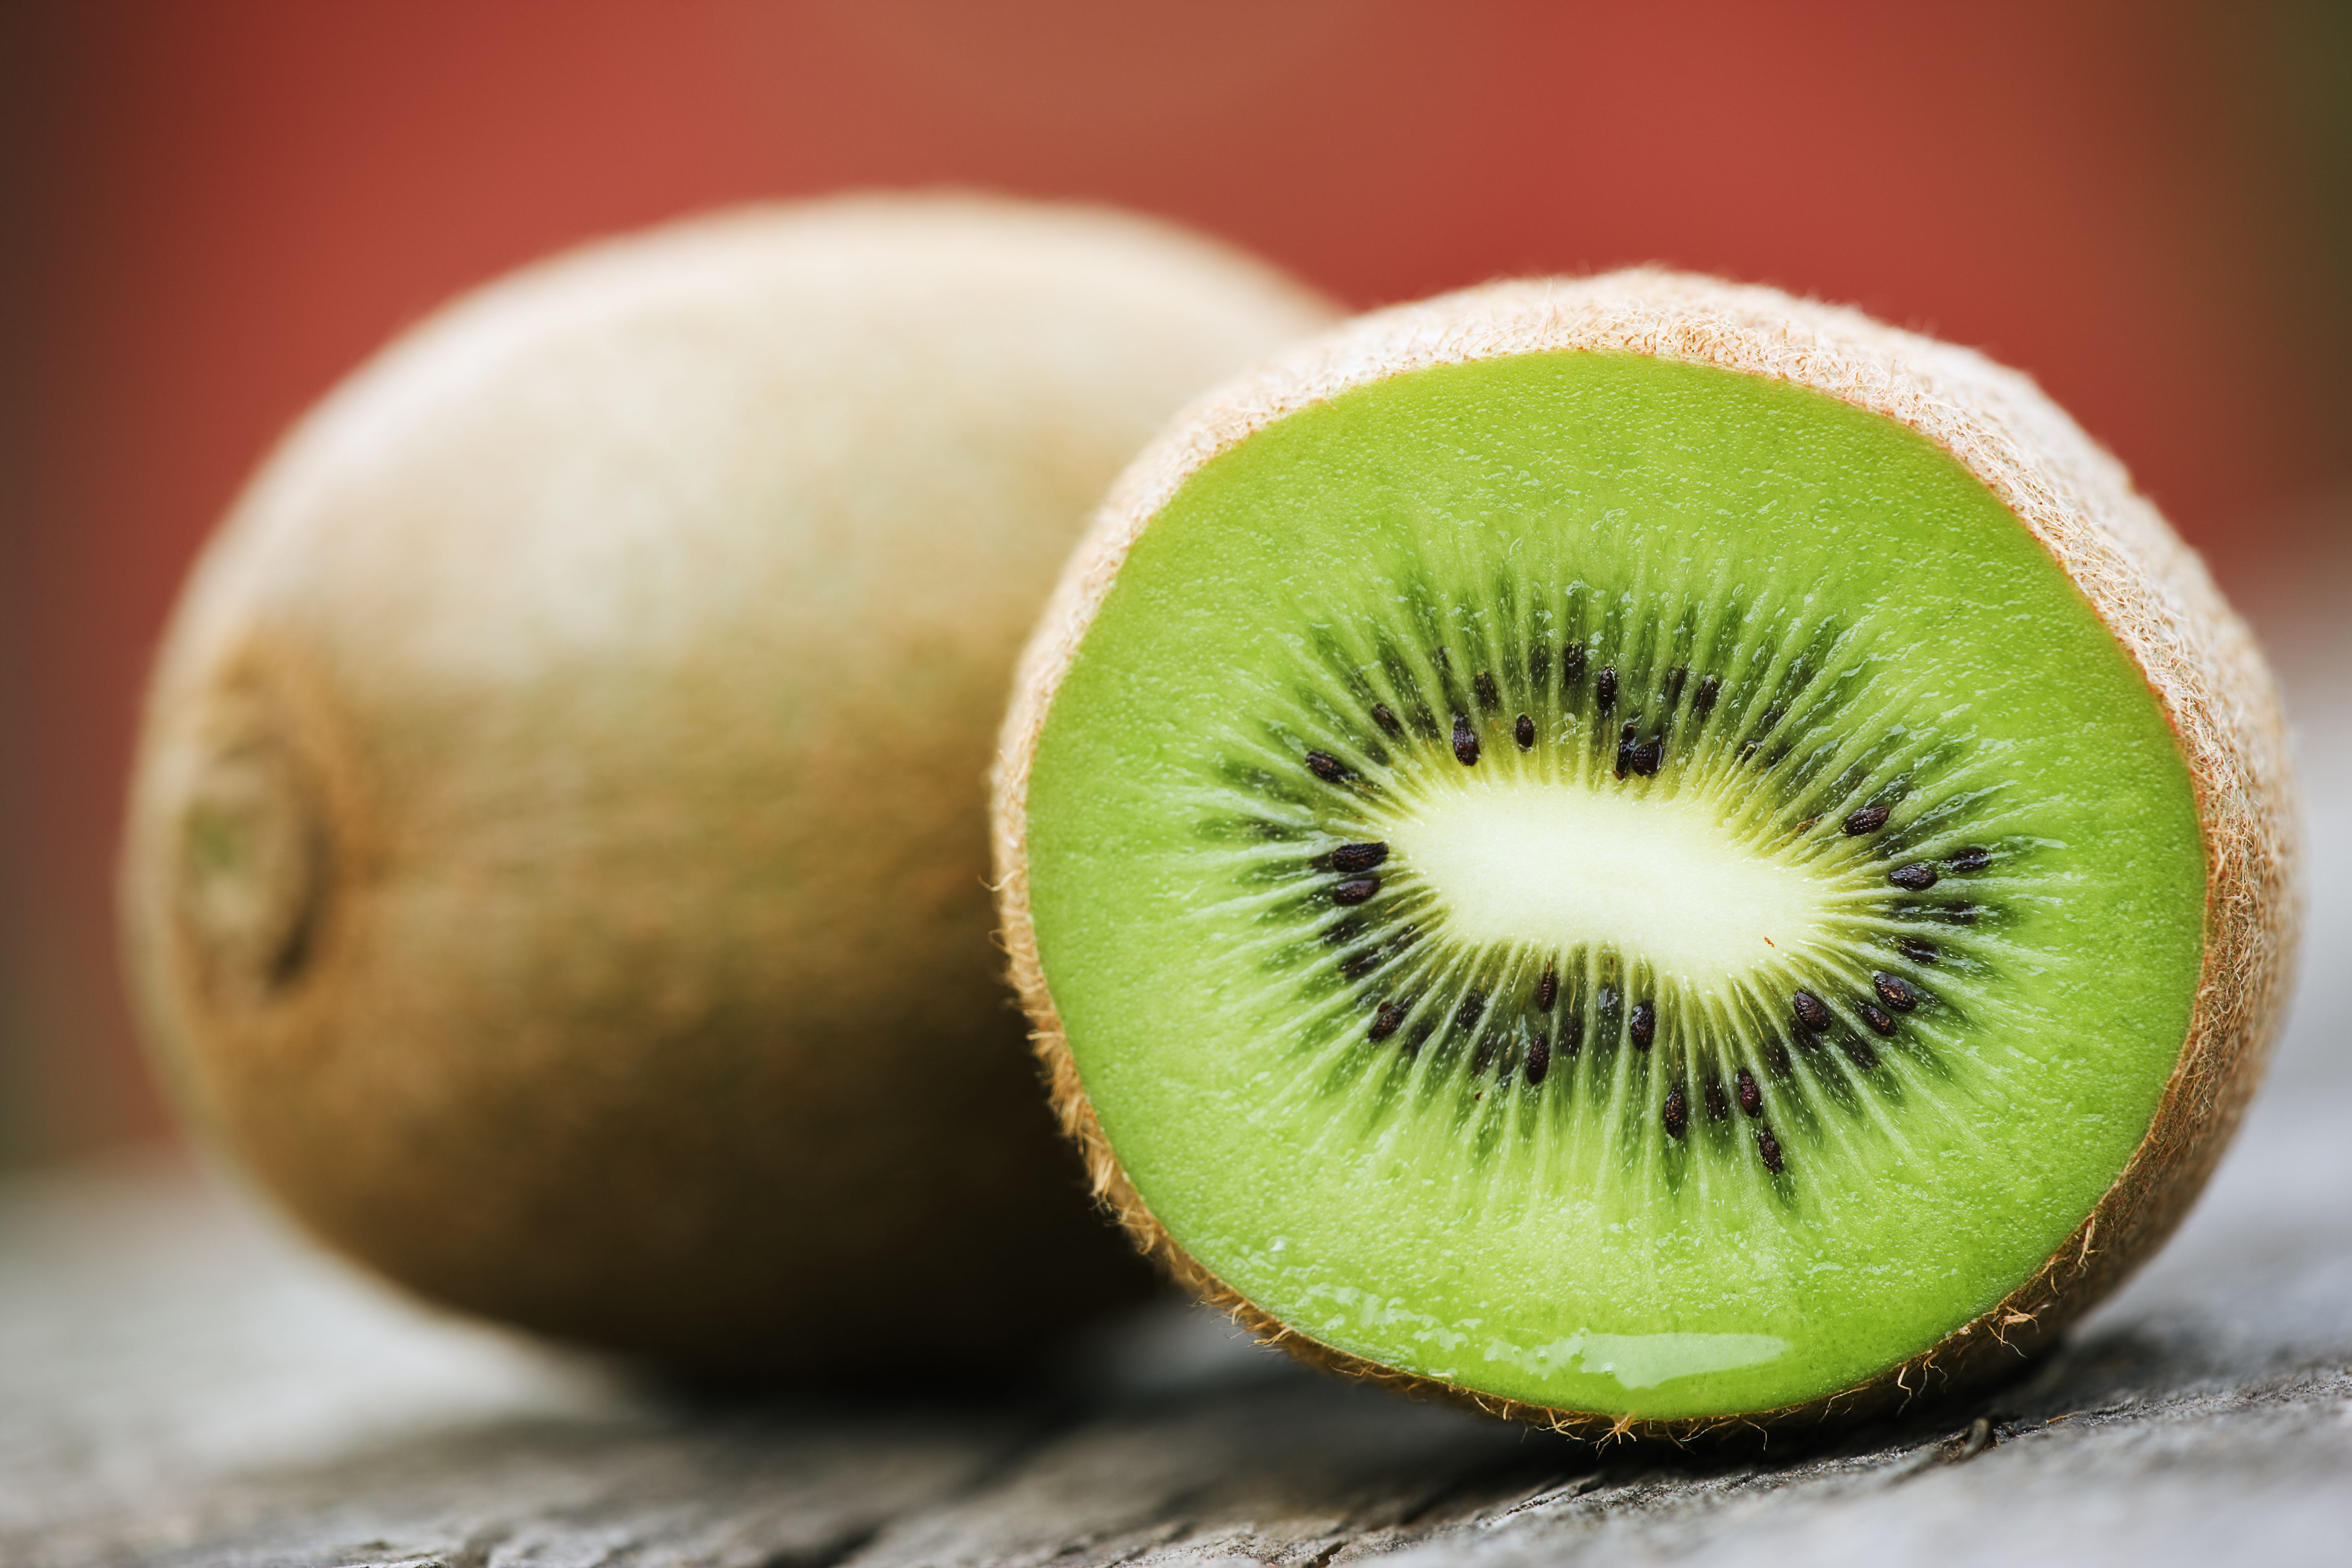 Kiwi Fruit, Pics, Picture, Image. Full Desktop